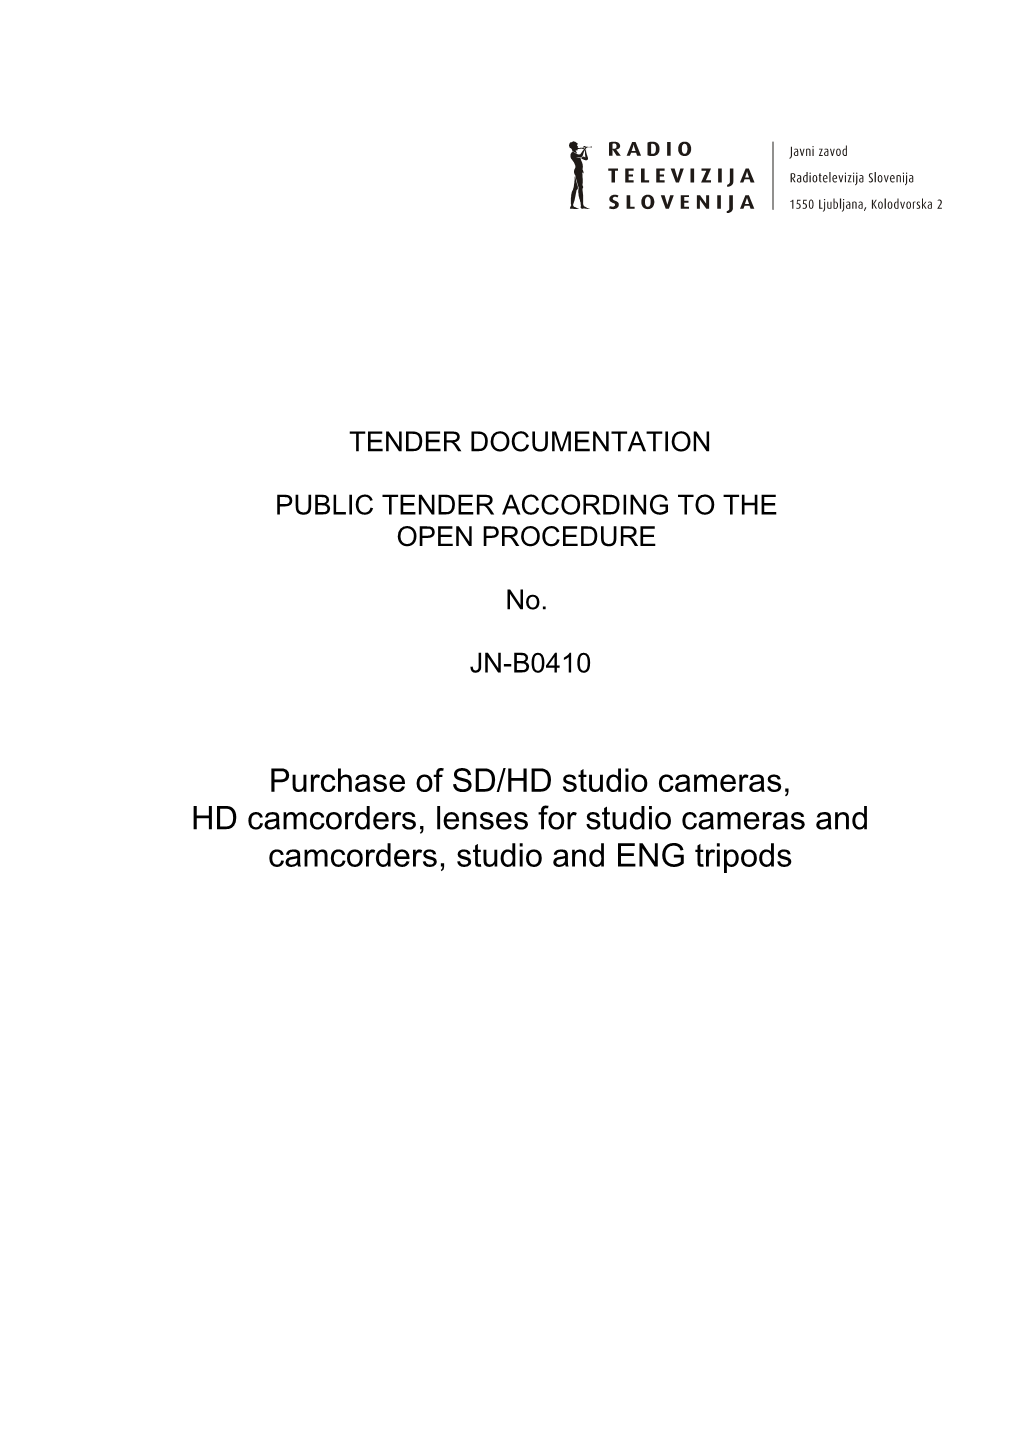 Tender Documentation JN-B0410